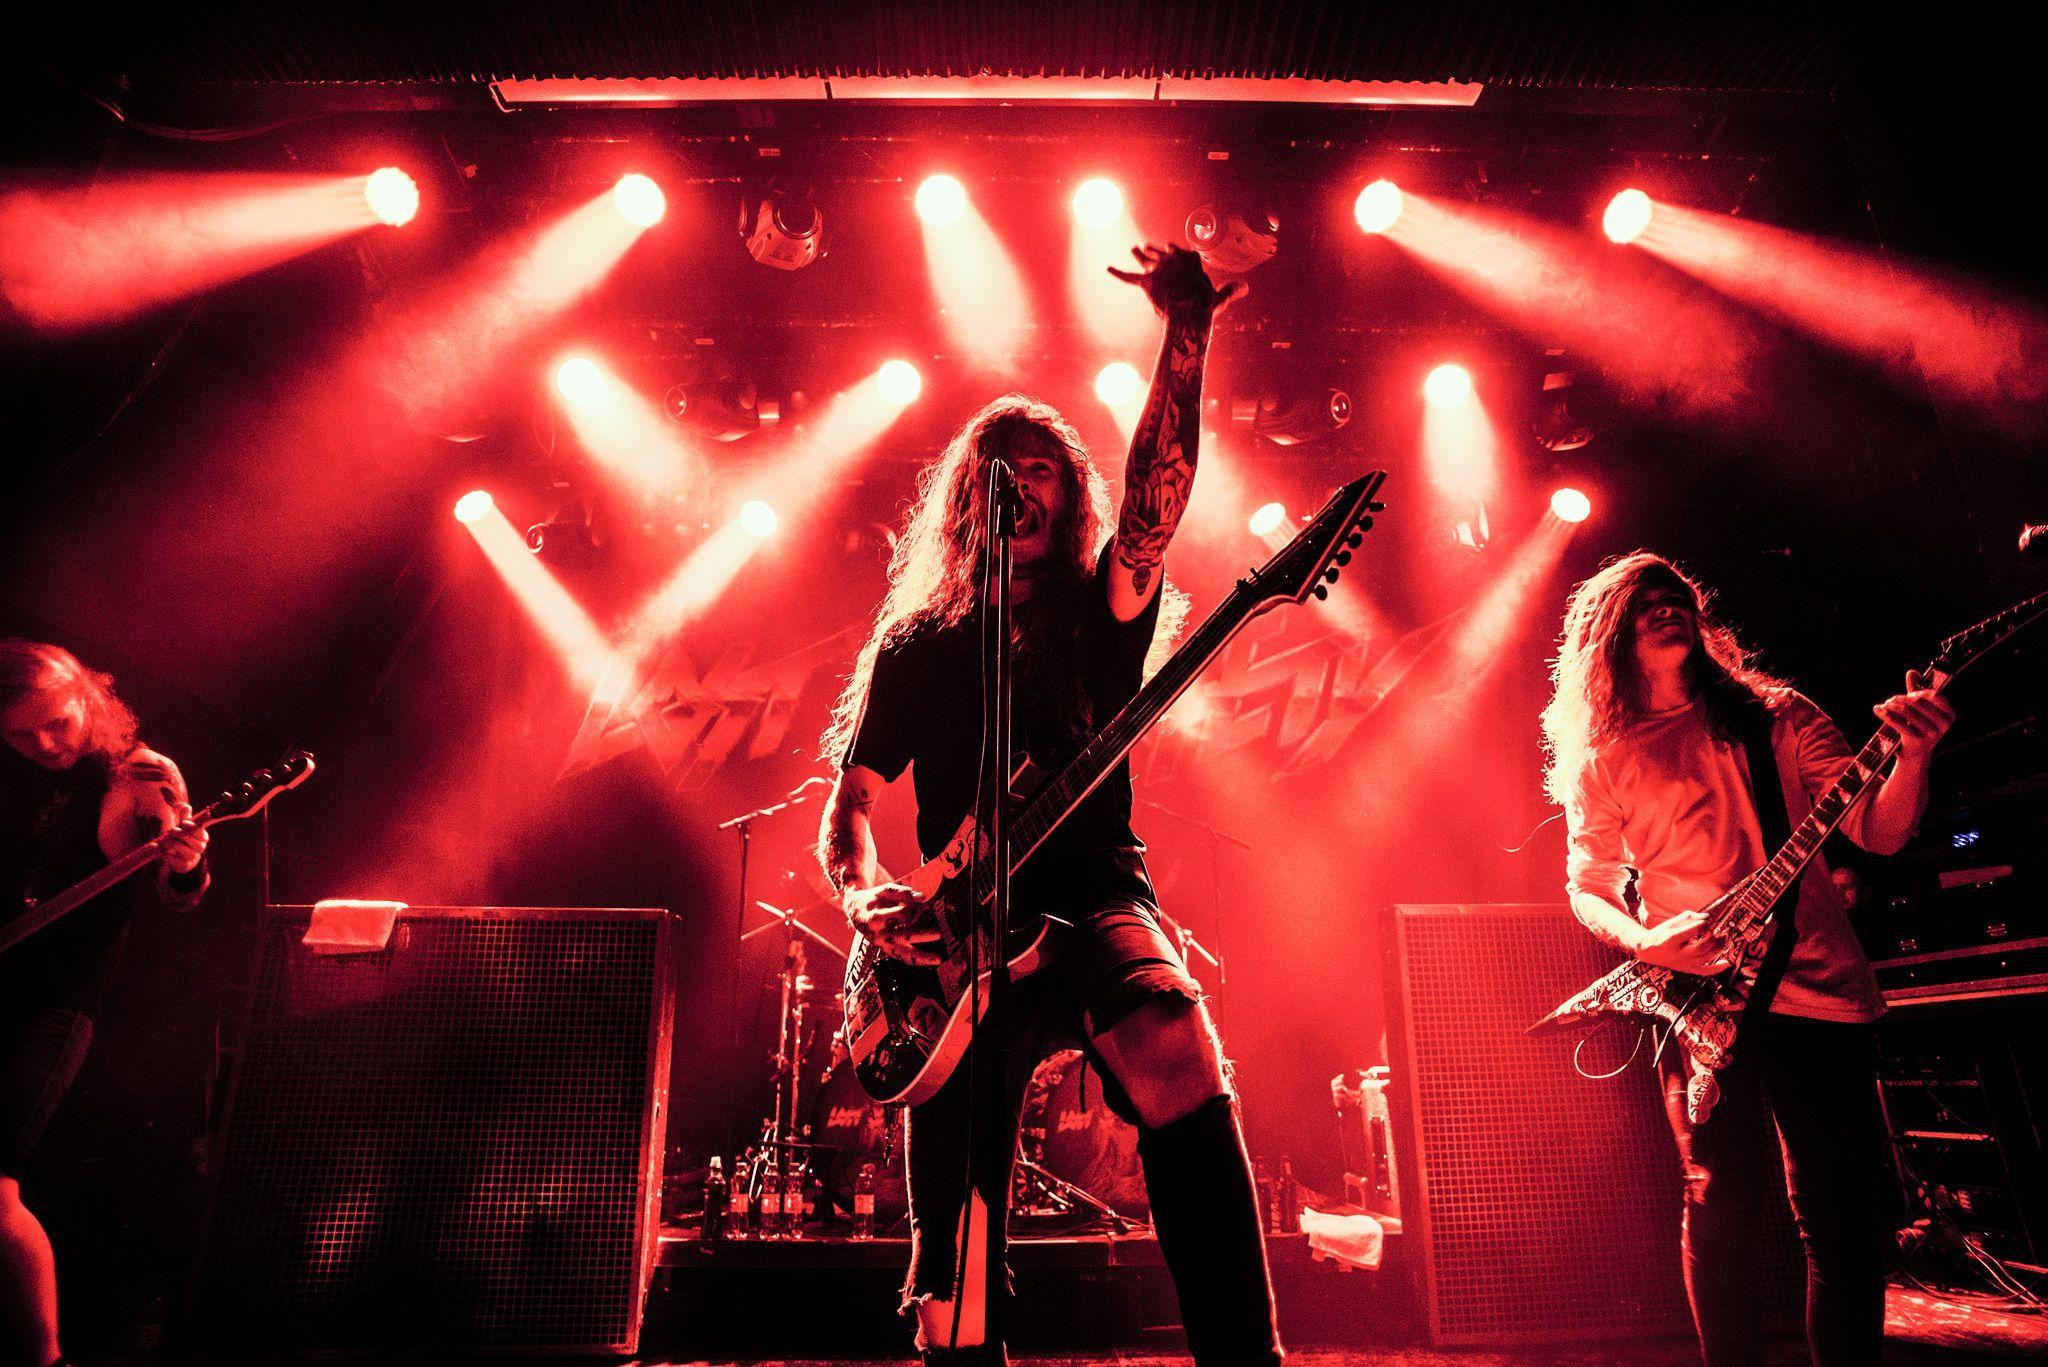 Heavy Metal Concert Wallpapers Top Free Heavy Metal Concert Backgrounds WallpaperAccess